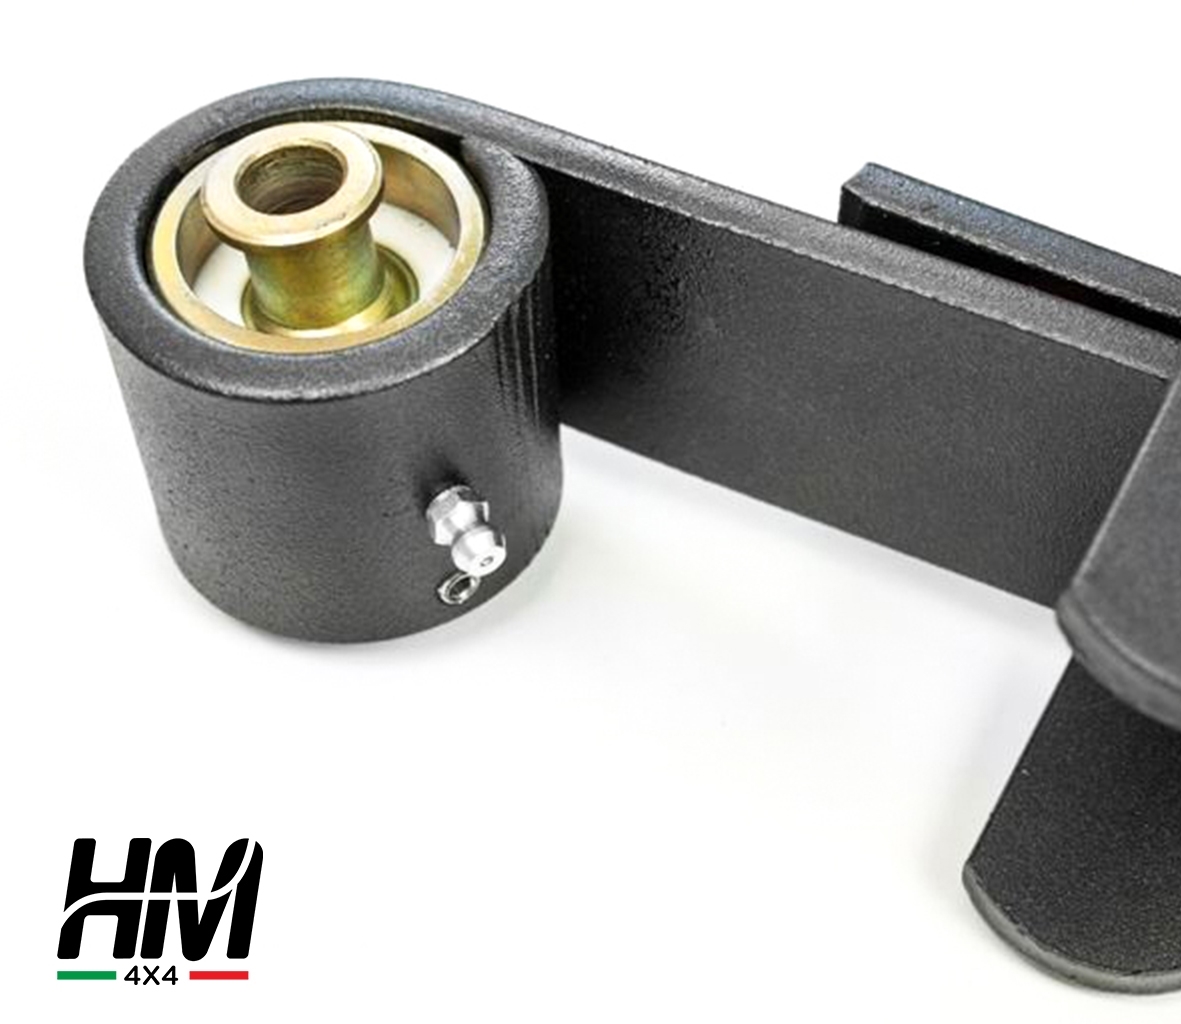 Kit de rehausse de suspension HM4X4 FULL TRIAL +11cm Shackle Reverse COMPETITION